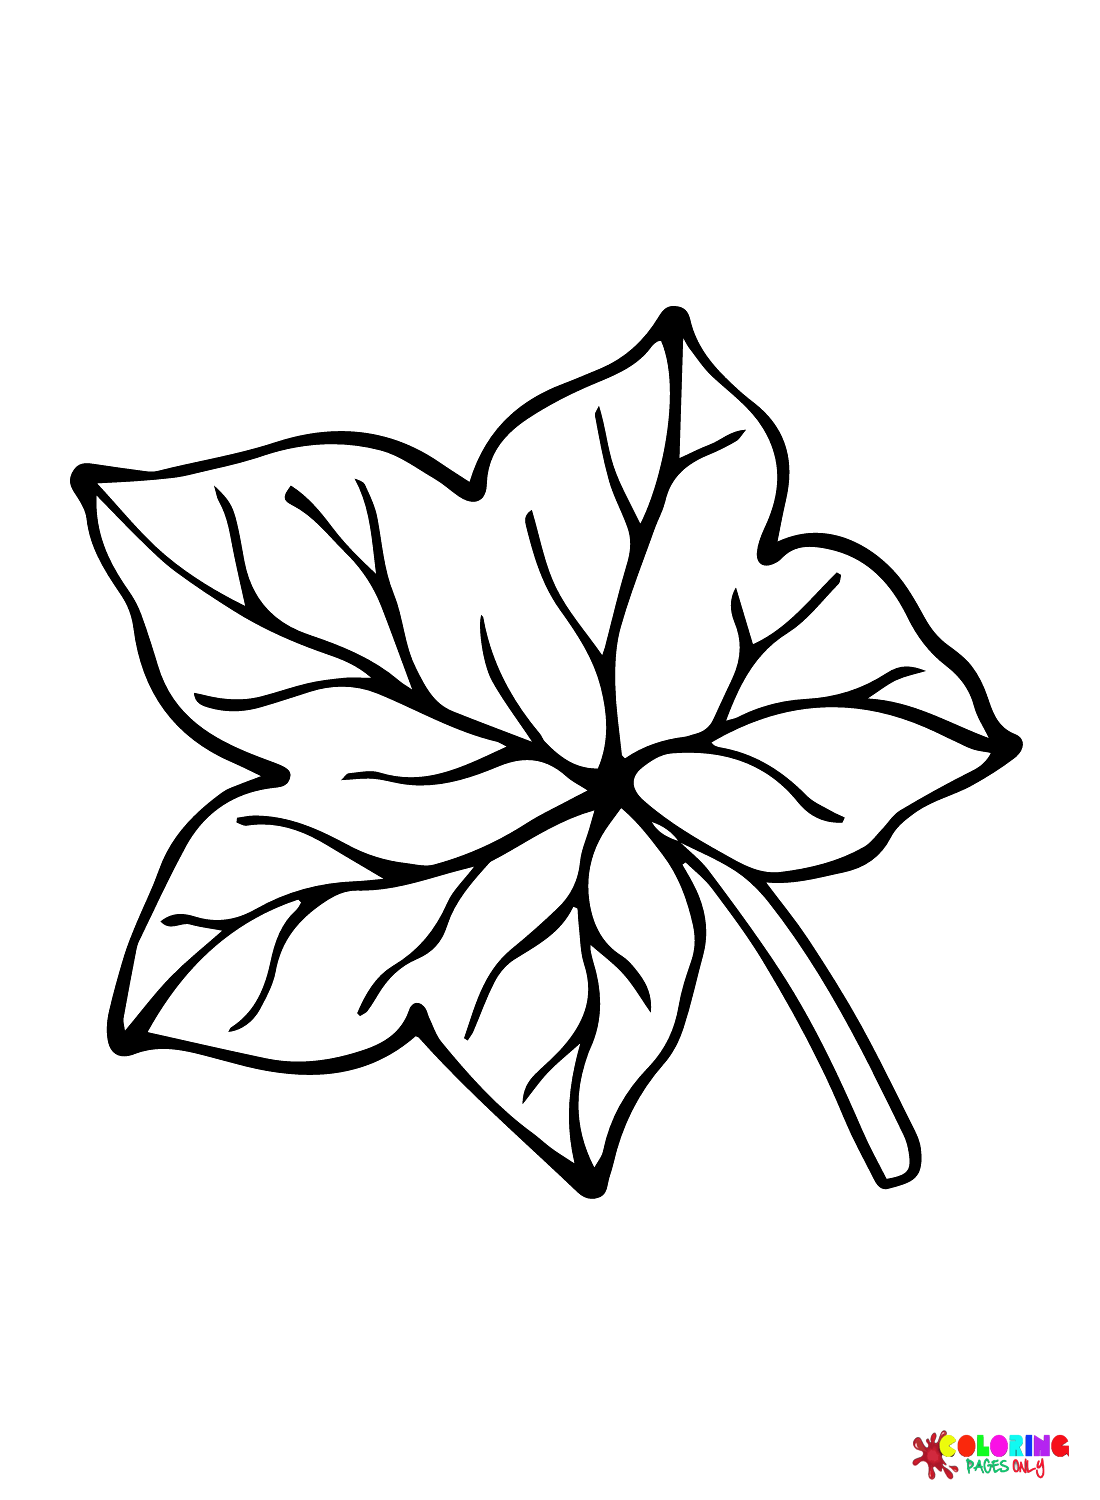 Leaf Printable from Leaves